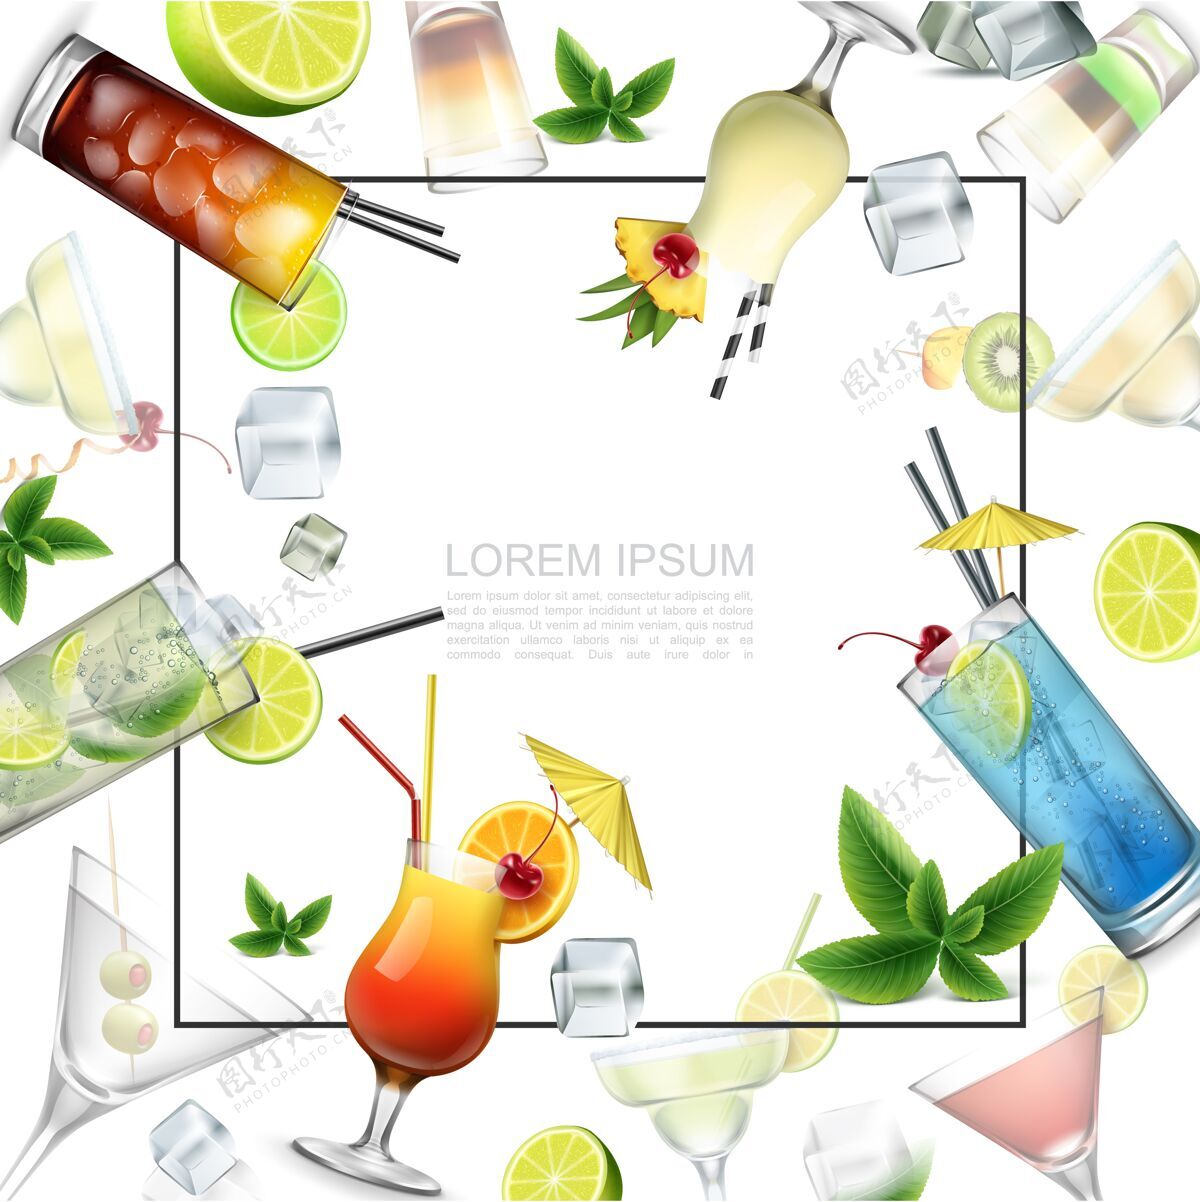 模板现实酒精饮料模板与文本框酒精鸡尾酒射击饮料薄荷叶冰块和水果片冰叶子酒精